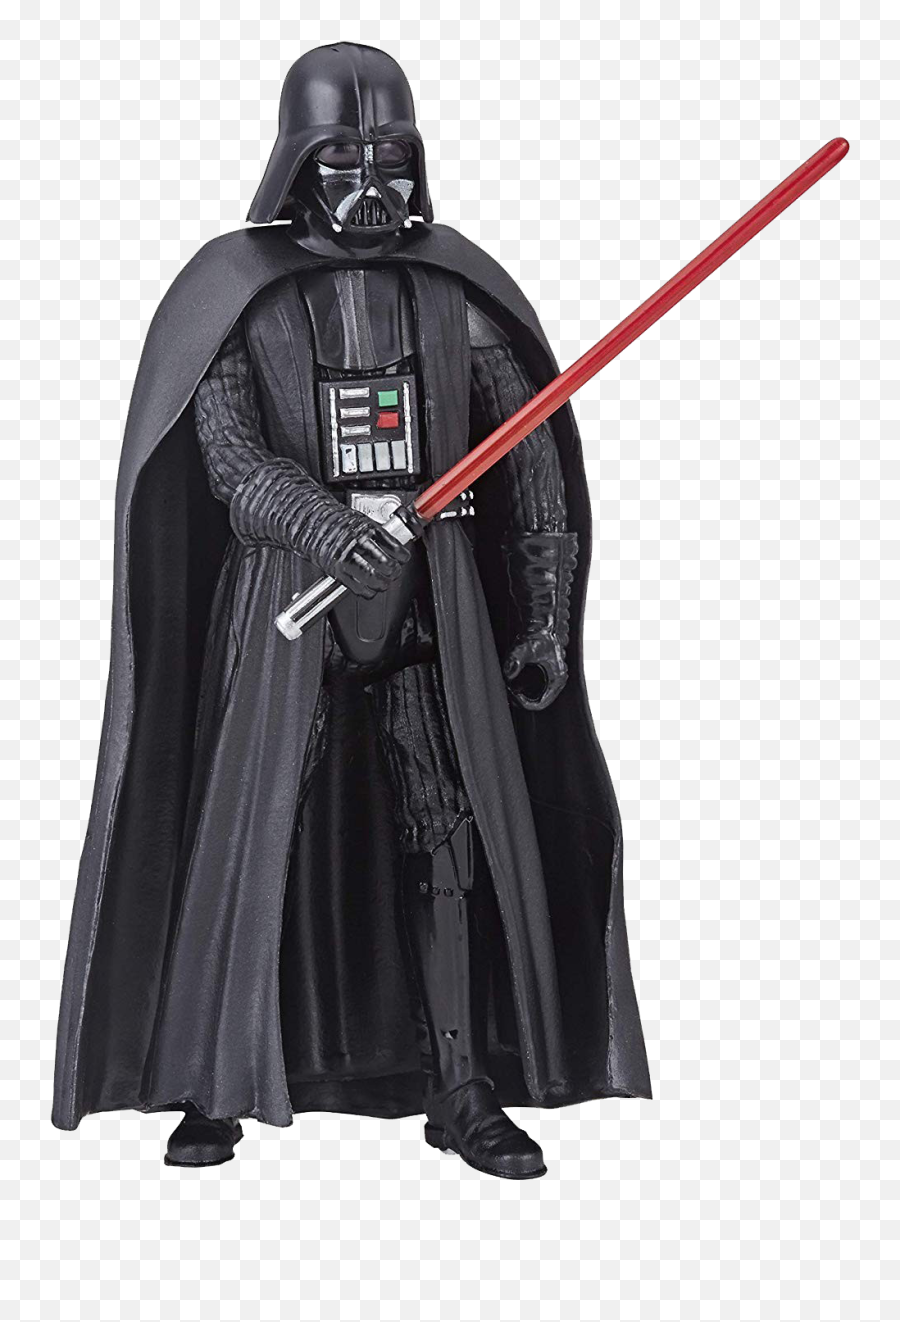 Darth Vader Png Free Pic - Star Wars Galaxy Of Adventures Darth Vader Emoji,Darth Vader Clipart